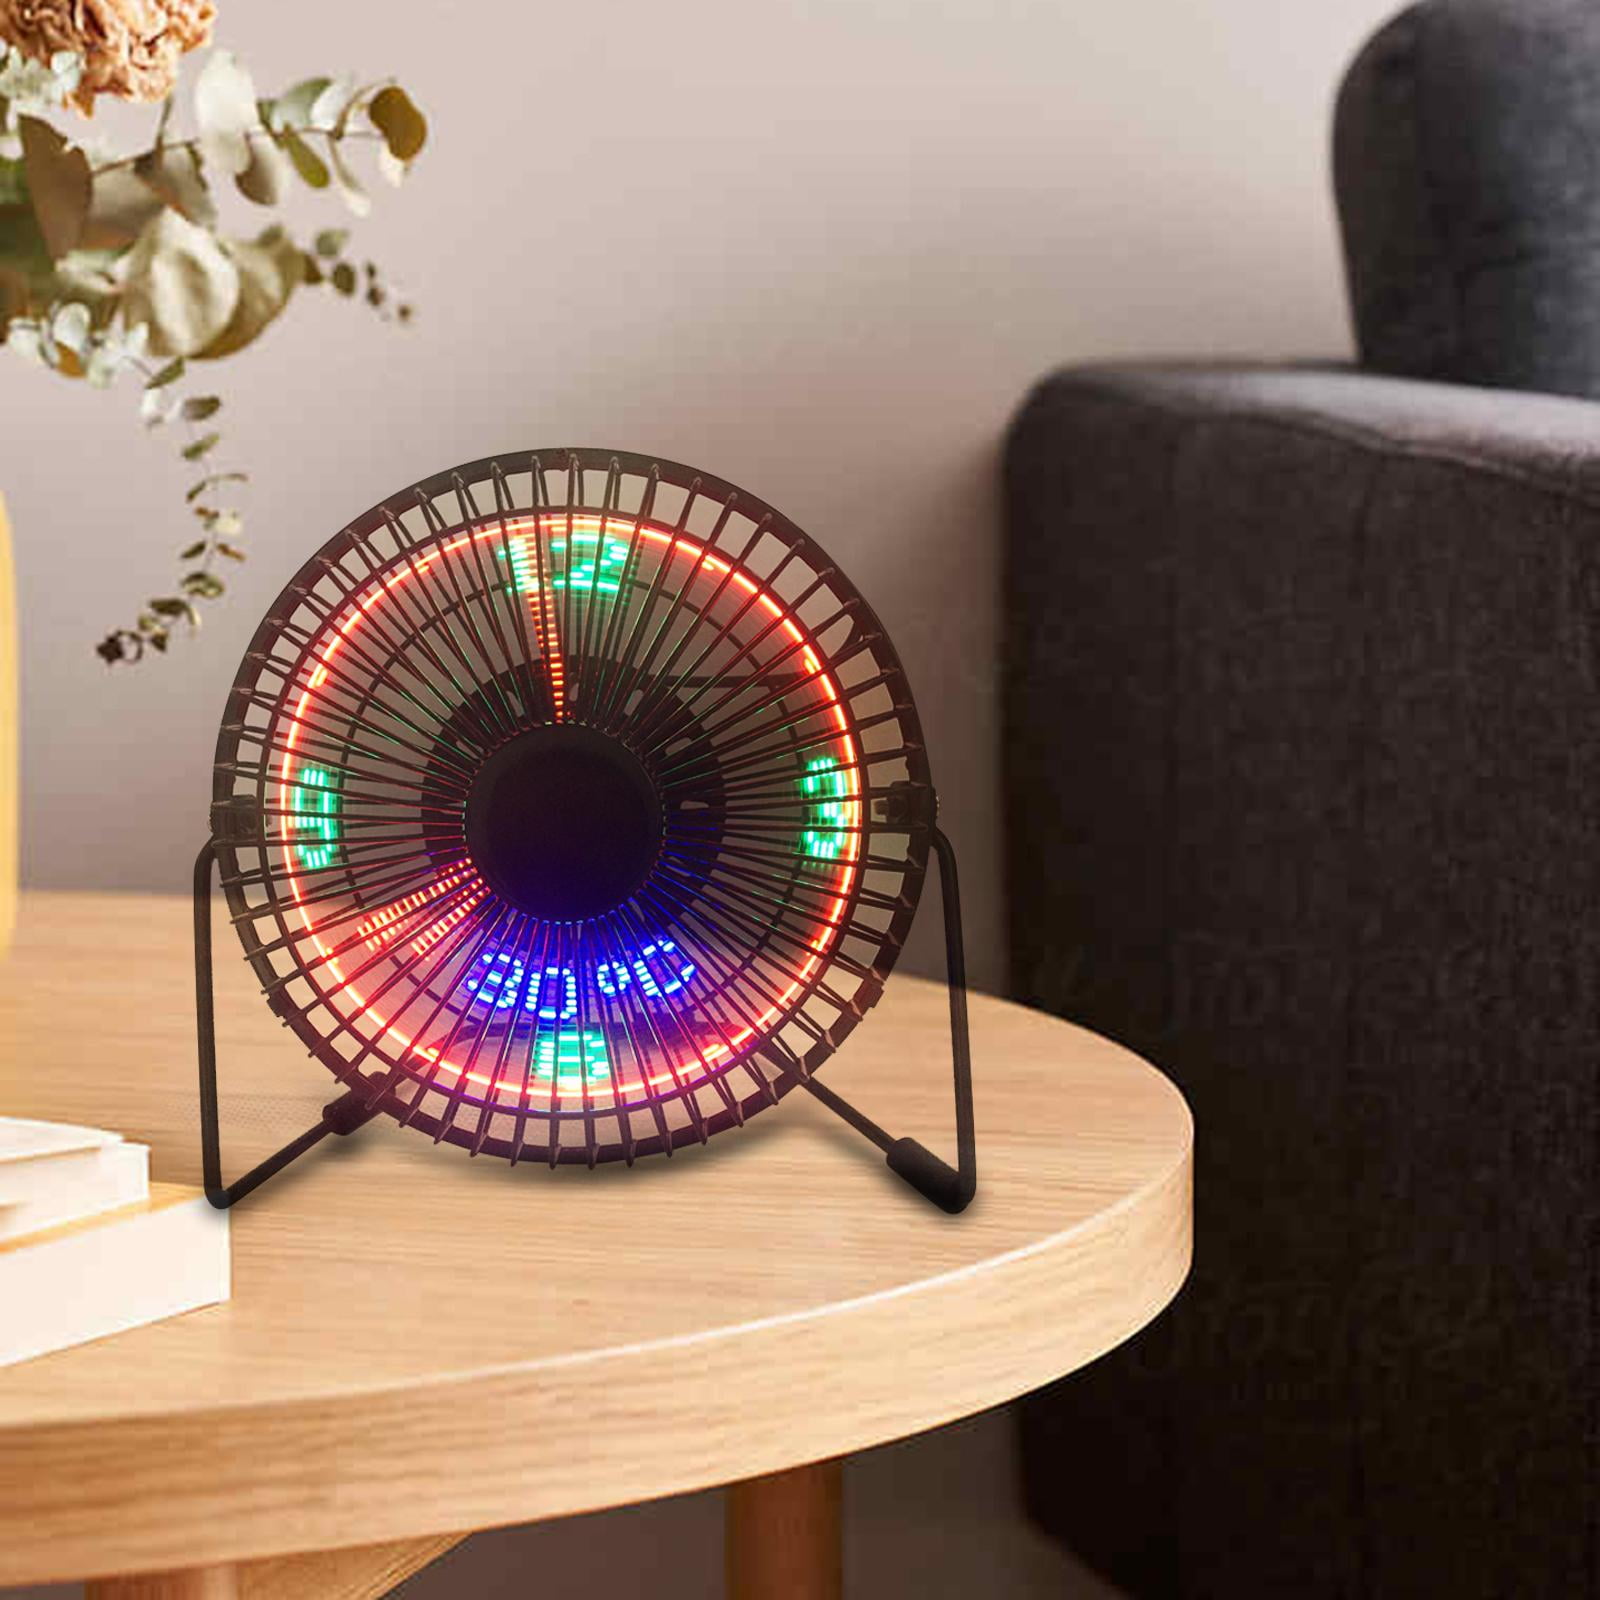 5v Usb Fans Cooler For Car Desk With Led Light Real Clock